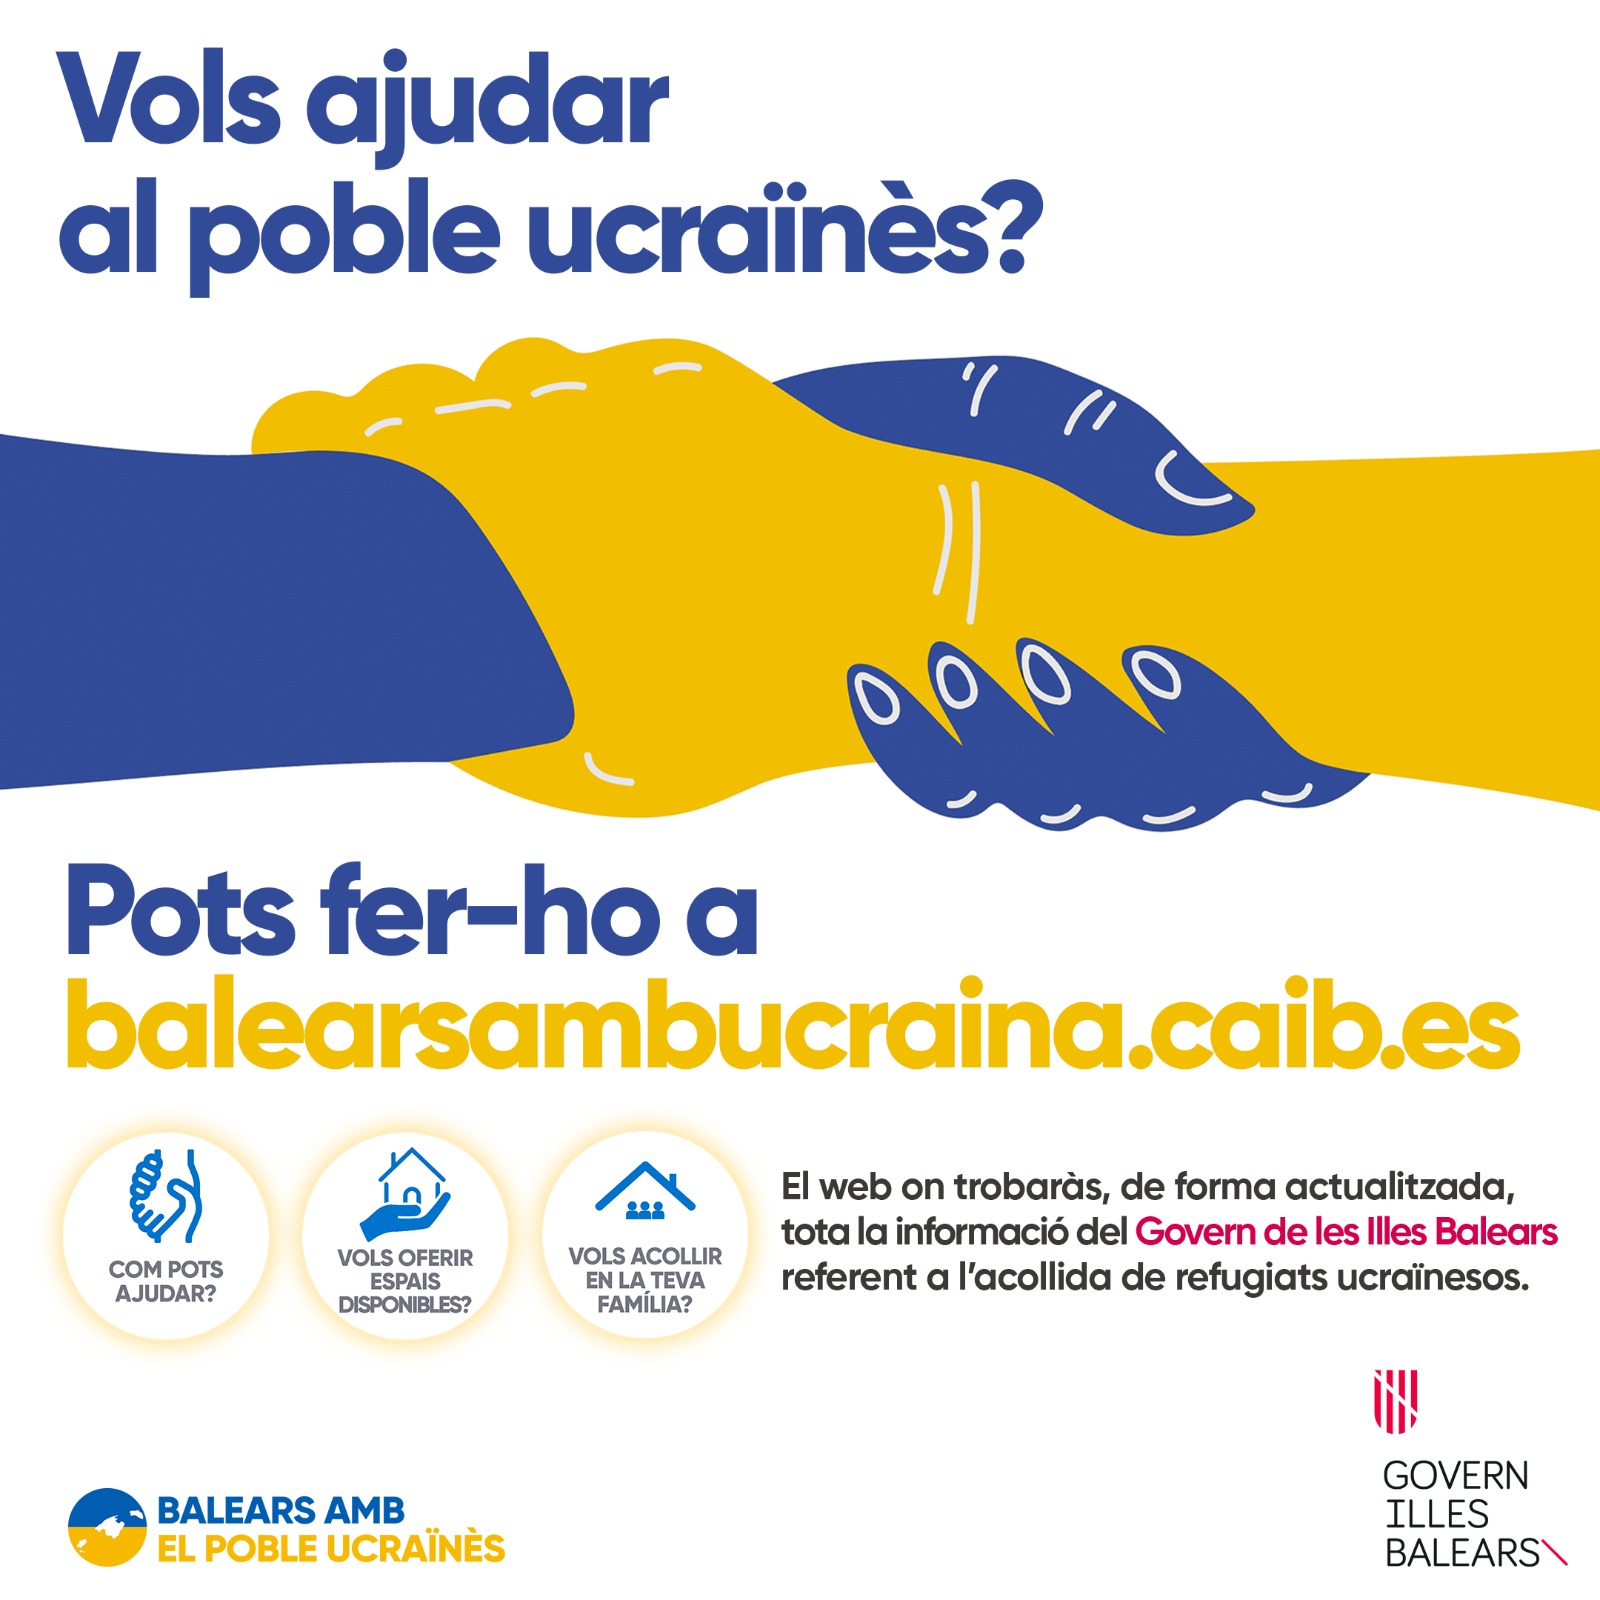 balearsambucraina.caib.es amb informació d'ajudes al poble ucraïnès